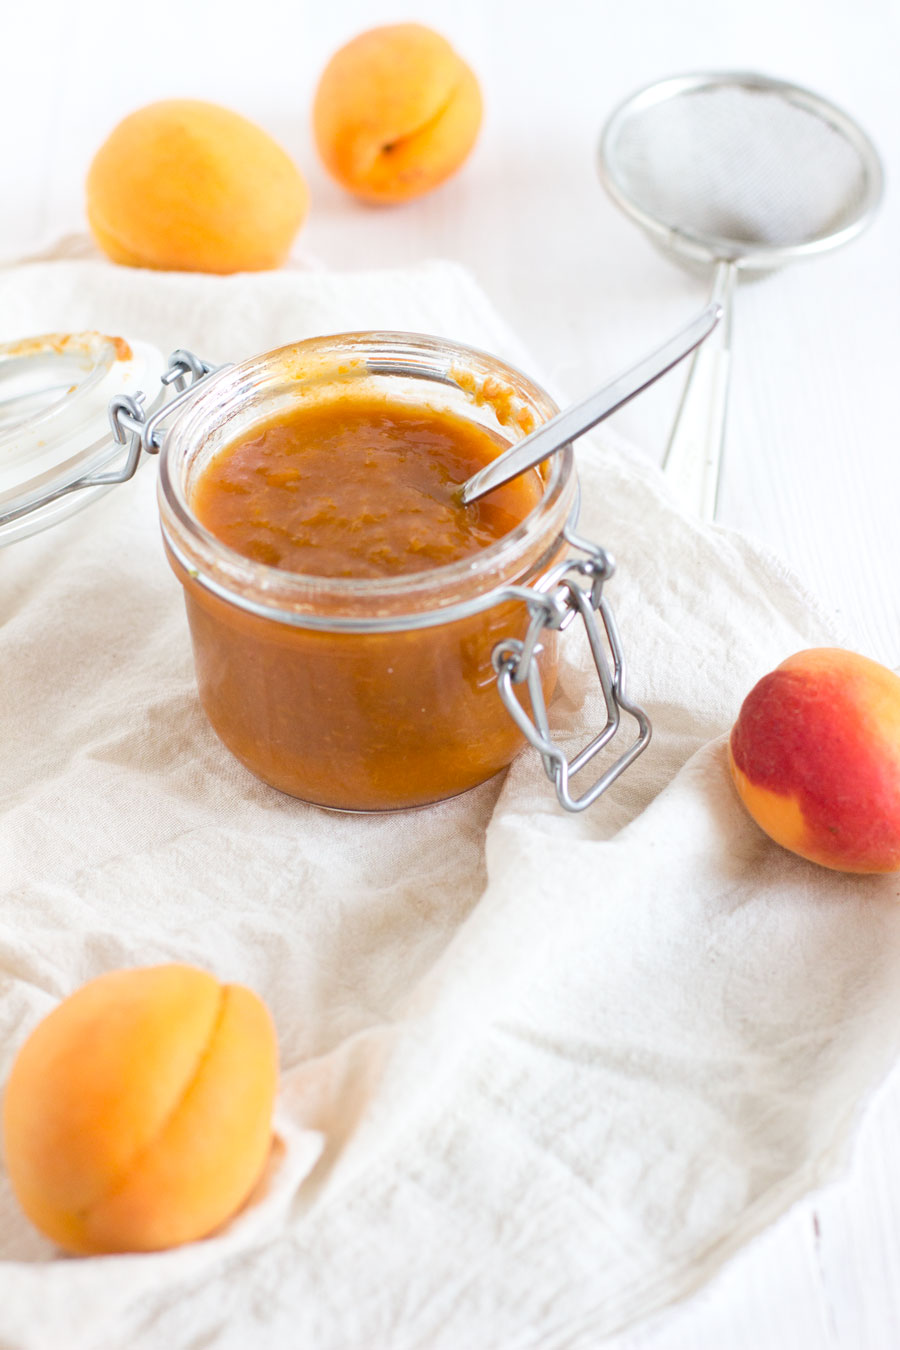 Easy homemade apricot jam recipe